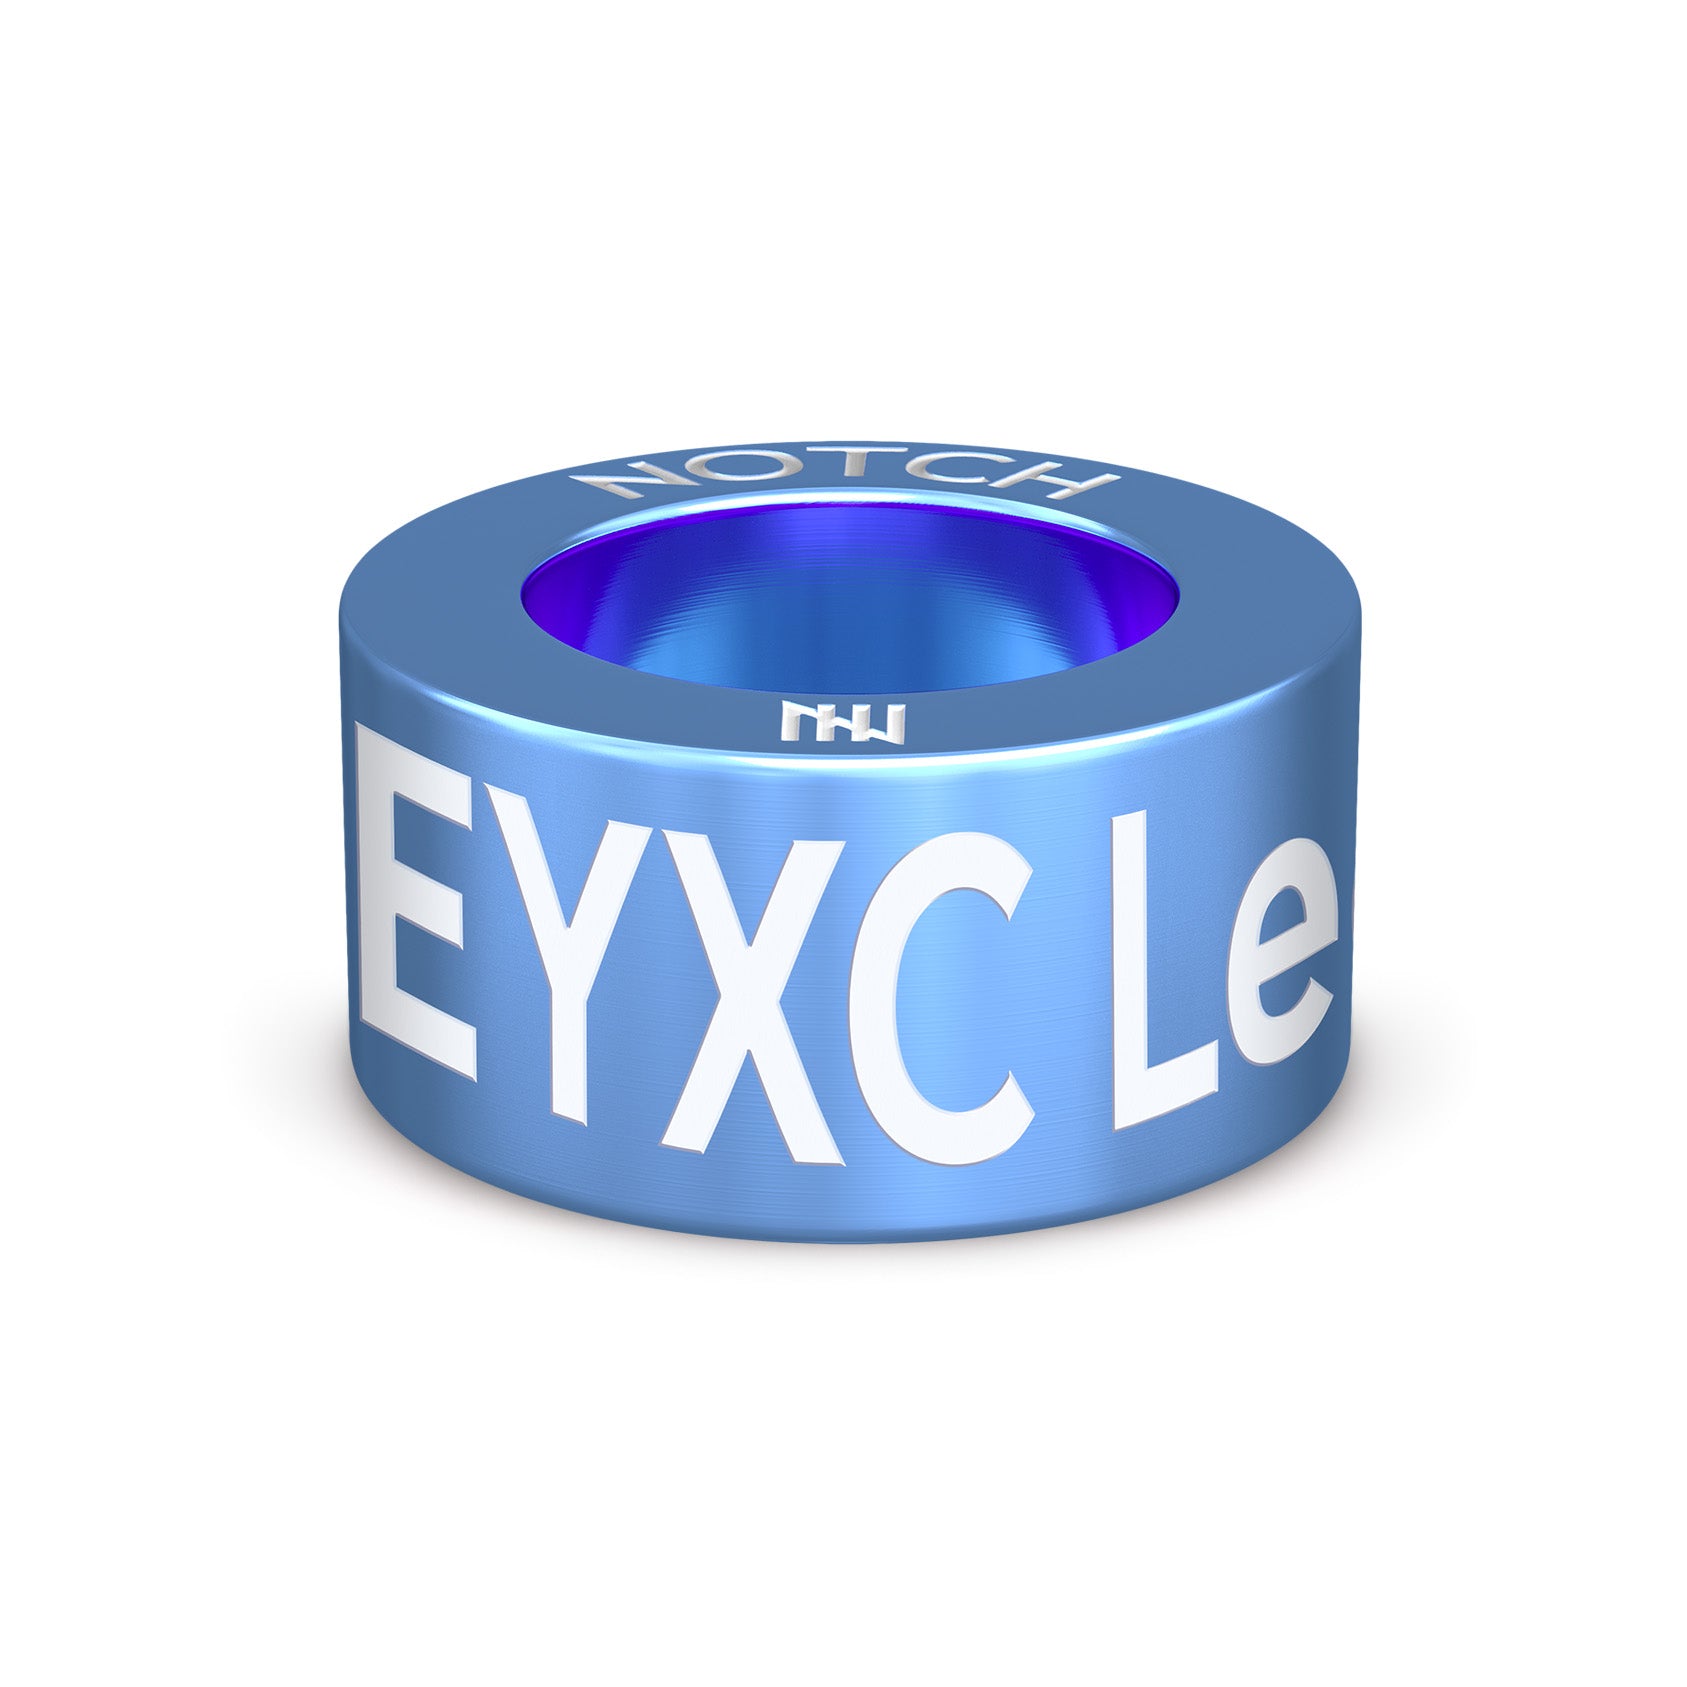 EYXC League NOTCH Charm